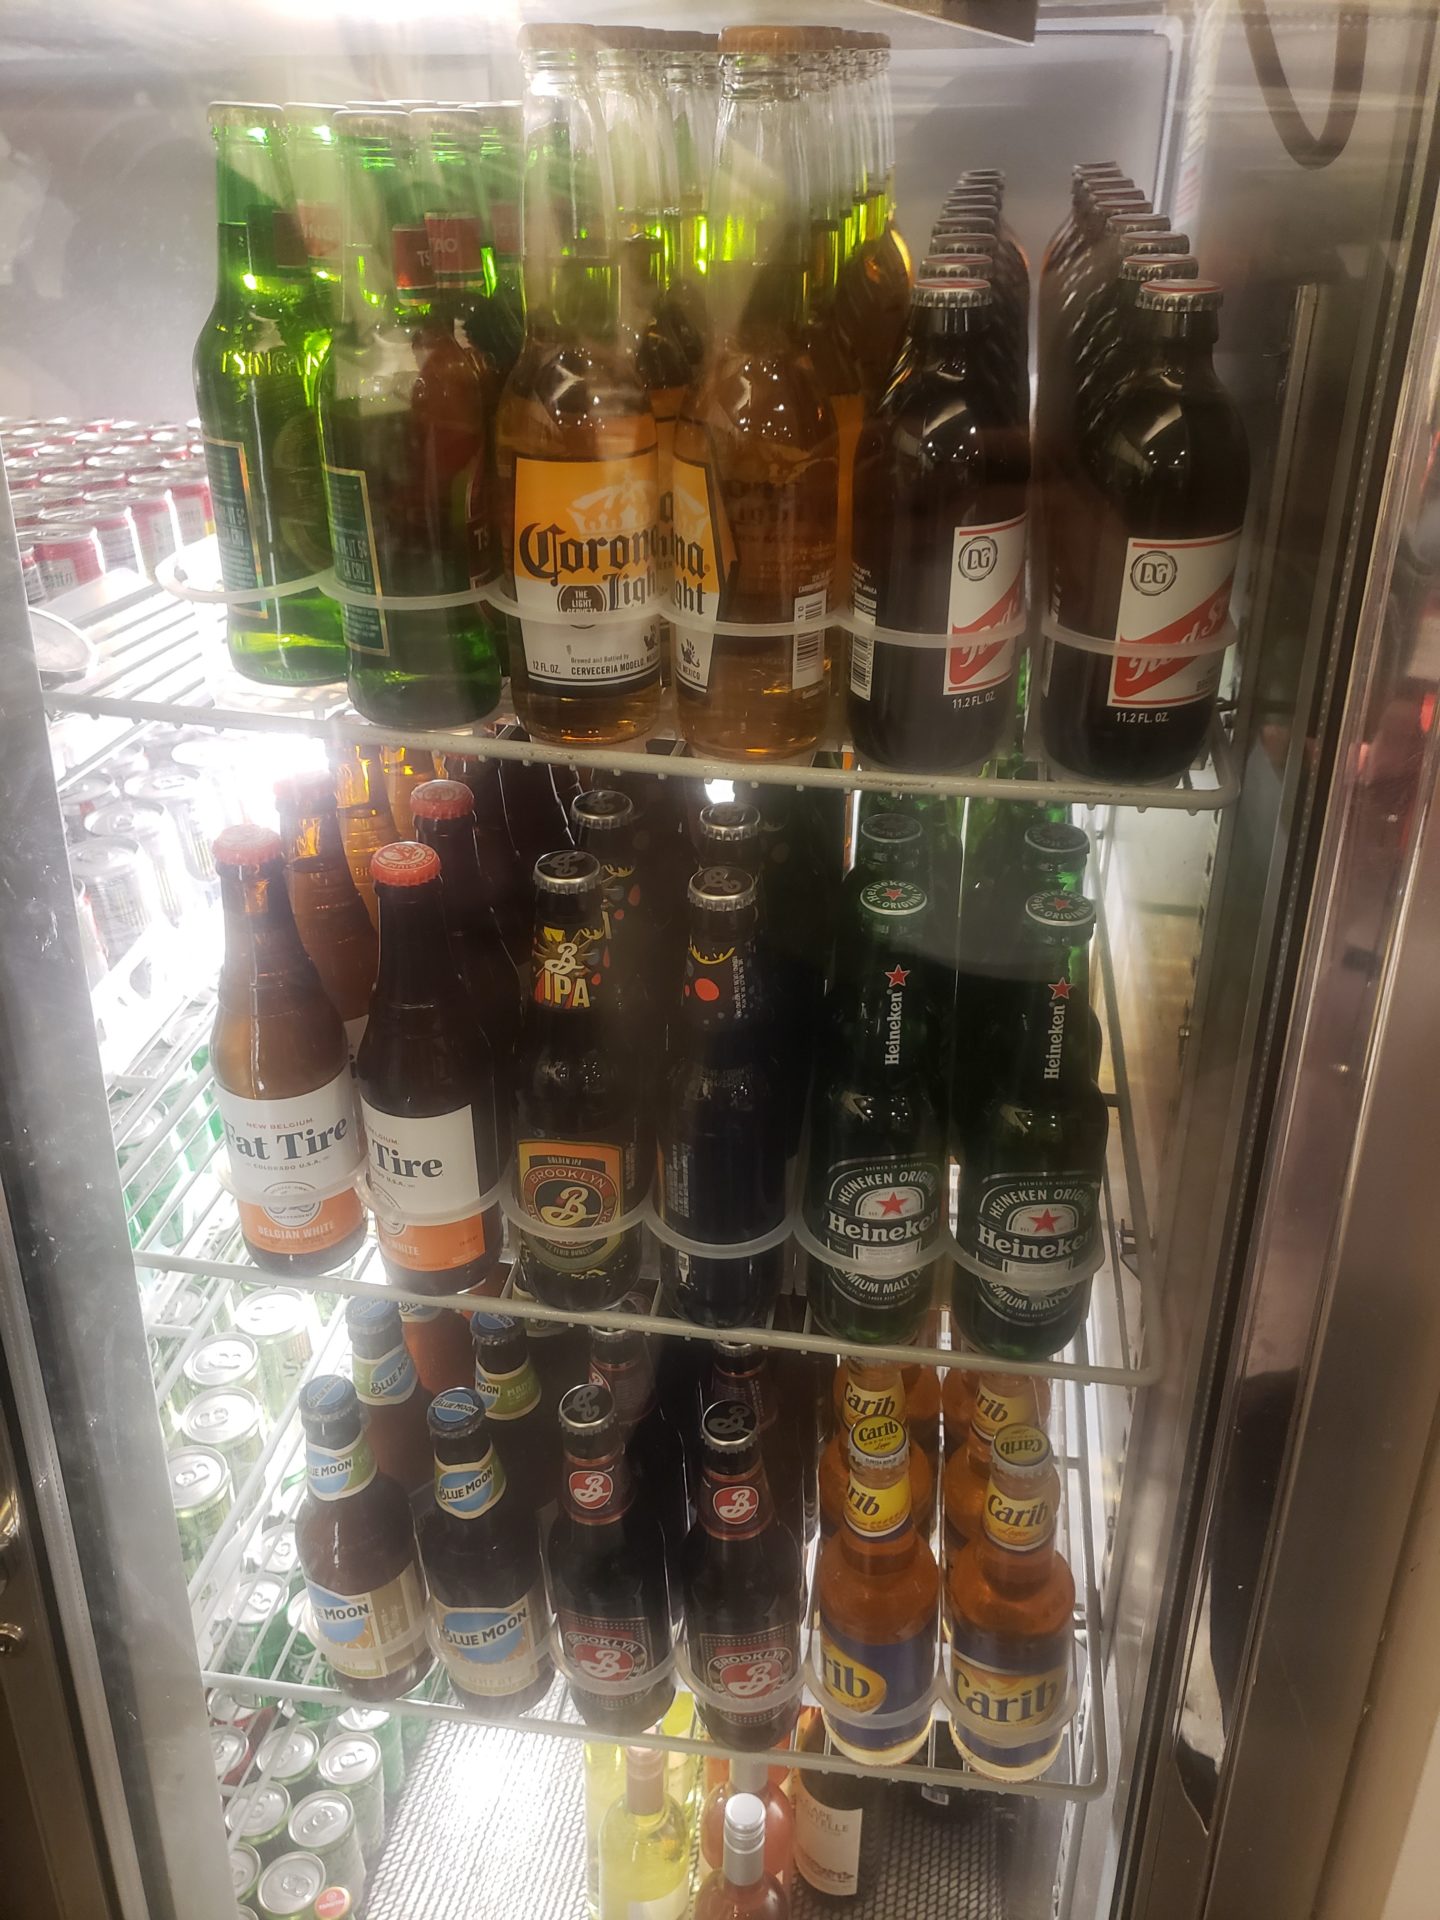 a refrigerator full of beer bottles